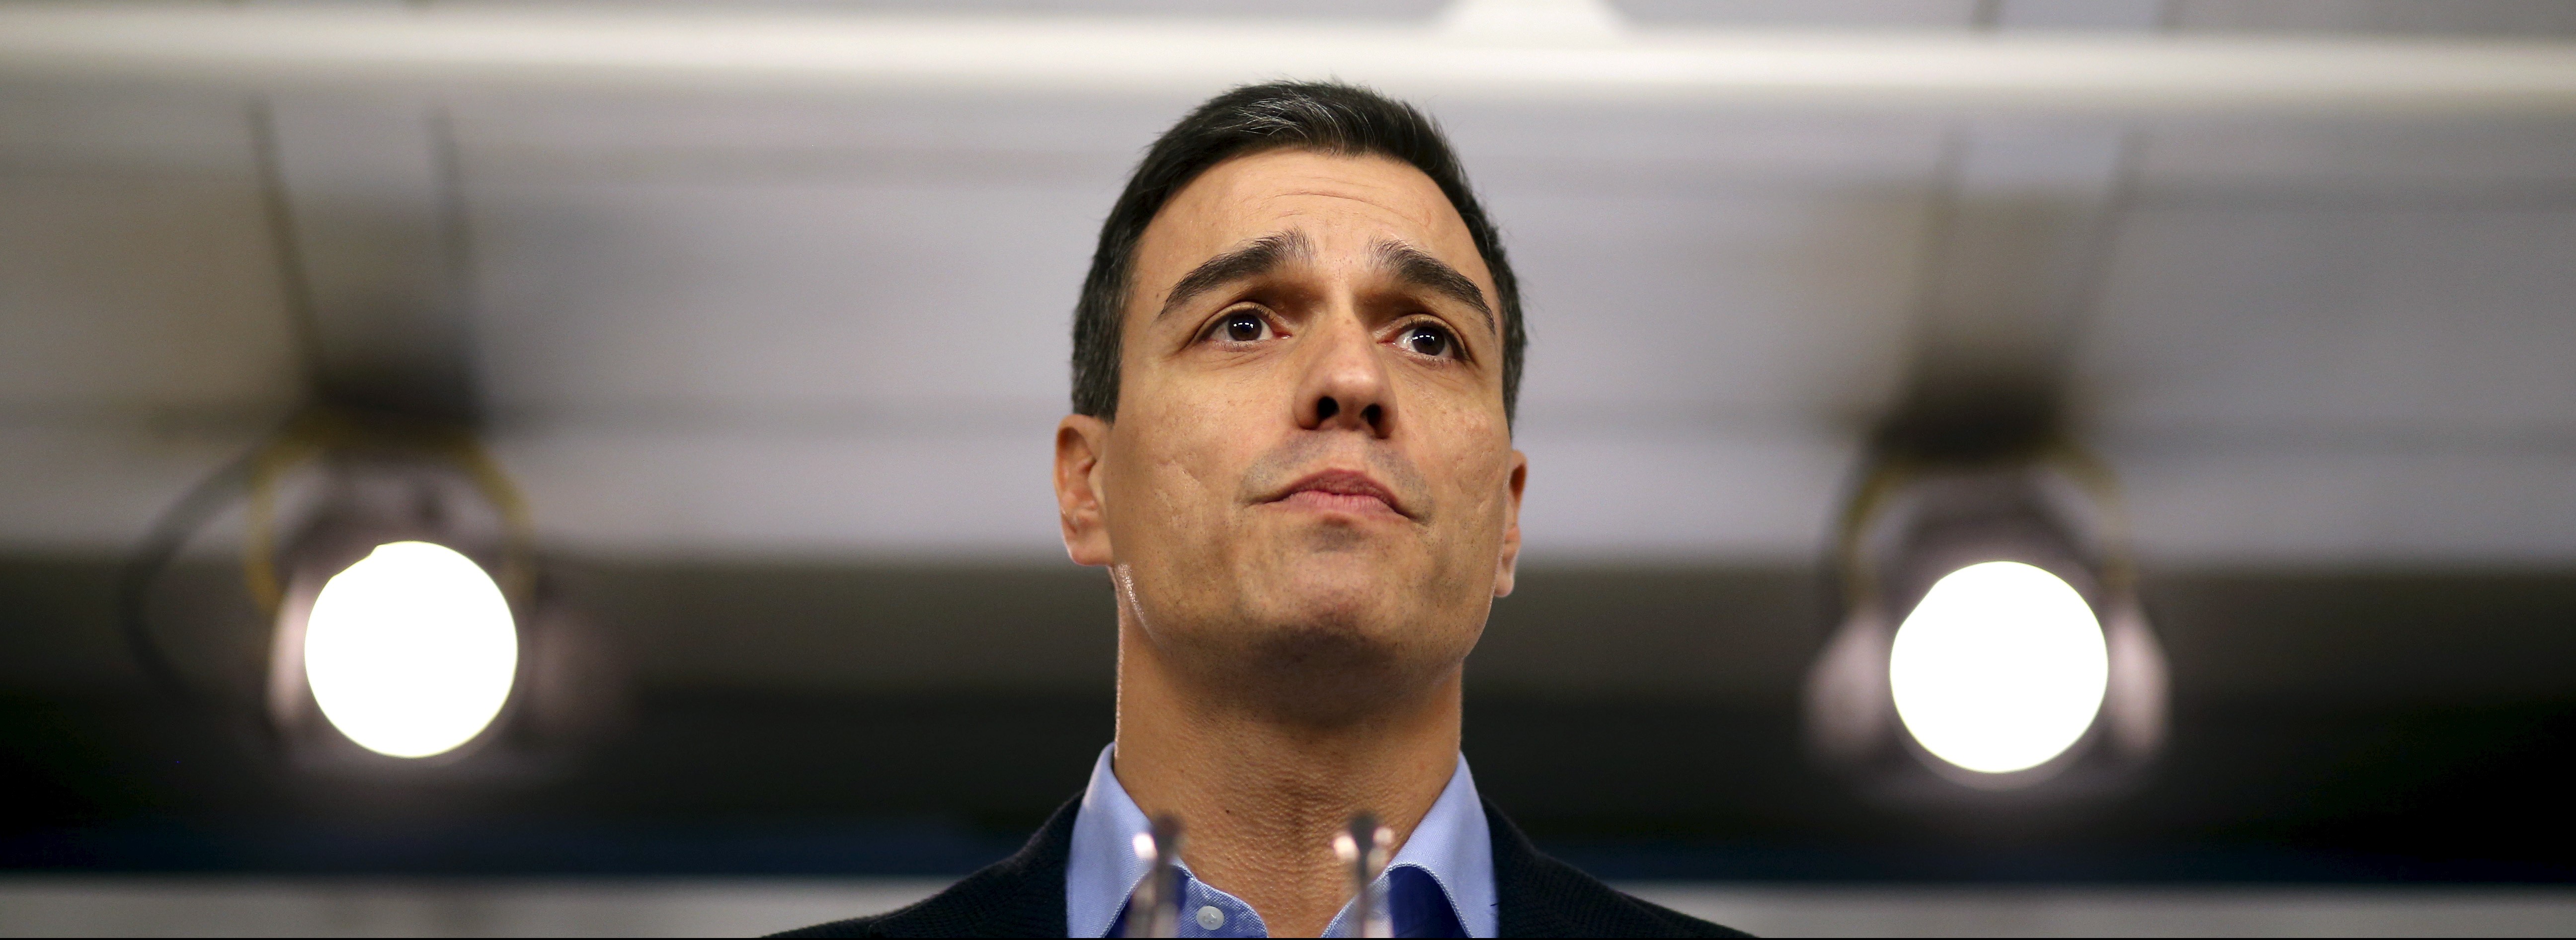 El líder del PSOE, Pedro Sánchez. FOTO: Reuters